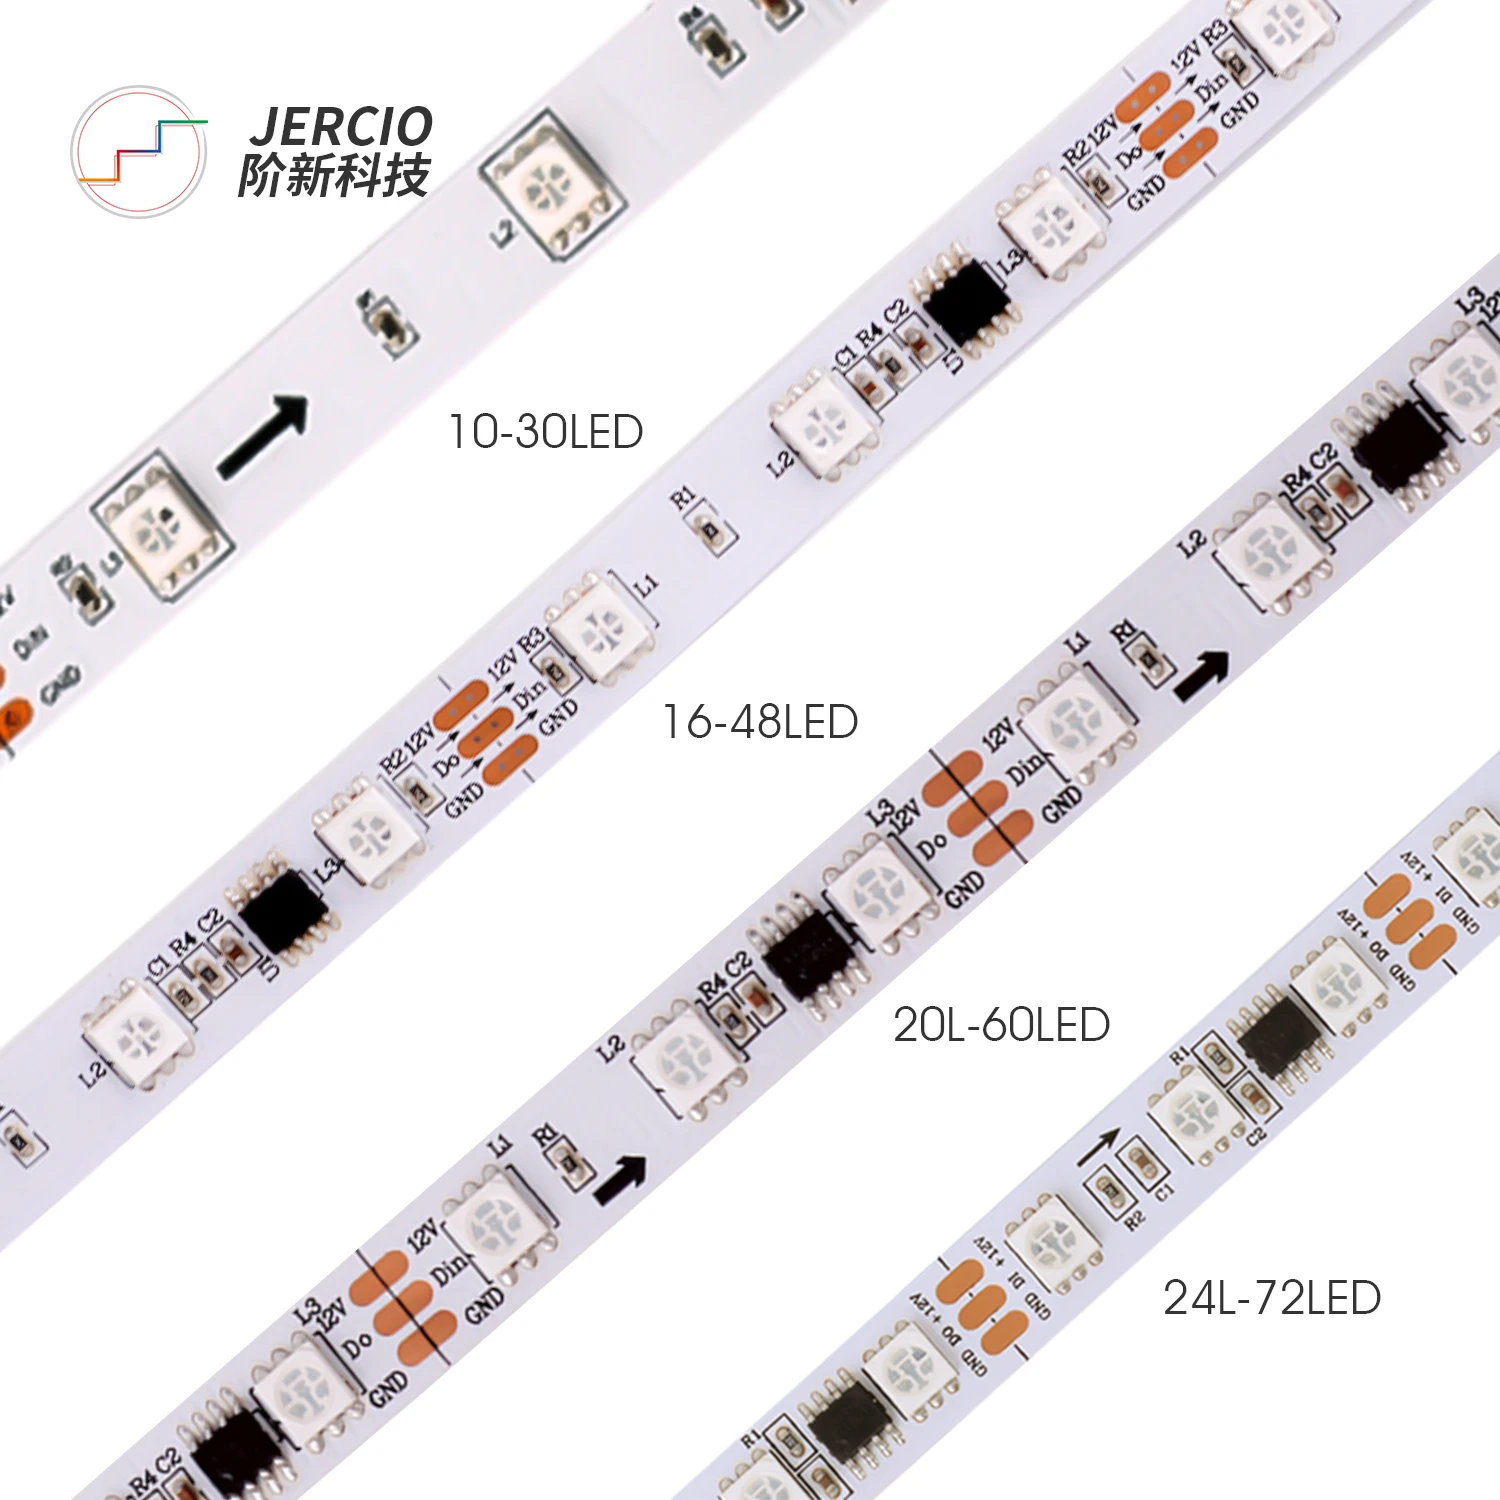 Jercio DC12V WS2811 led Pixels Programmable led strip 30/48/60 leds/m,WS2811IC 5050 RGB SMD White/Black PCB led strip